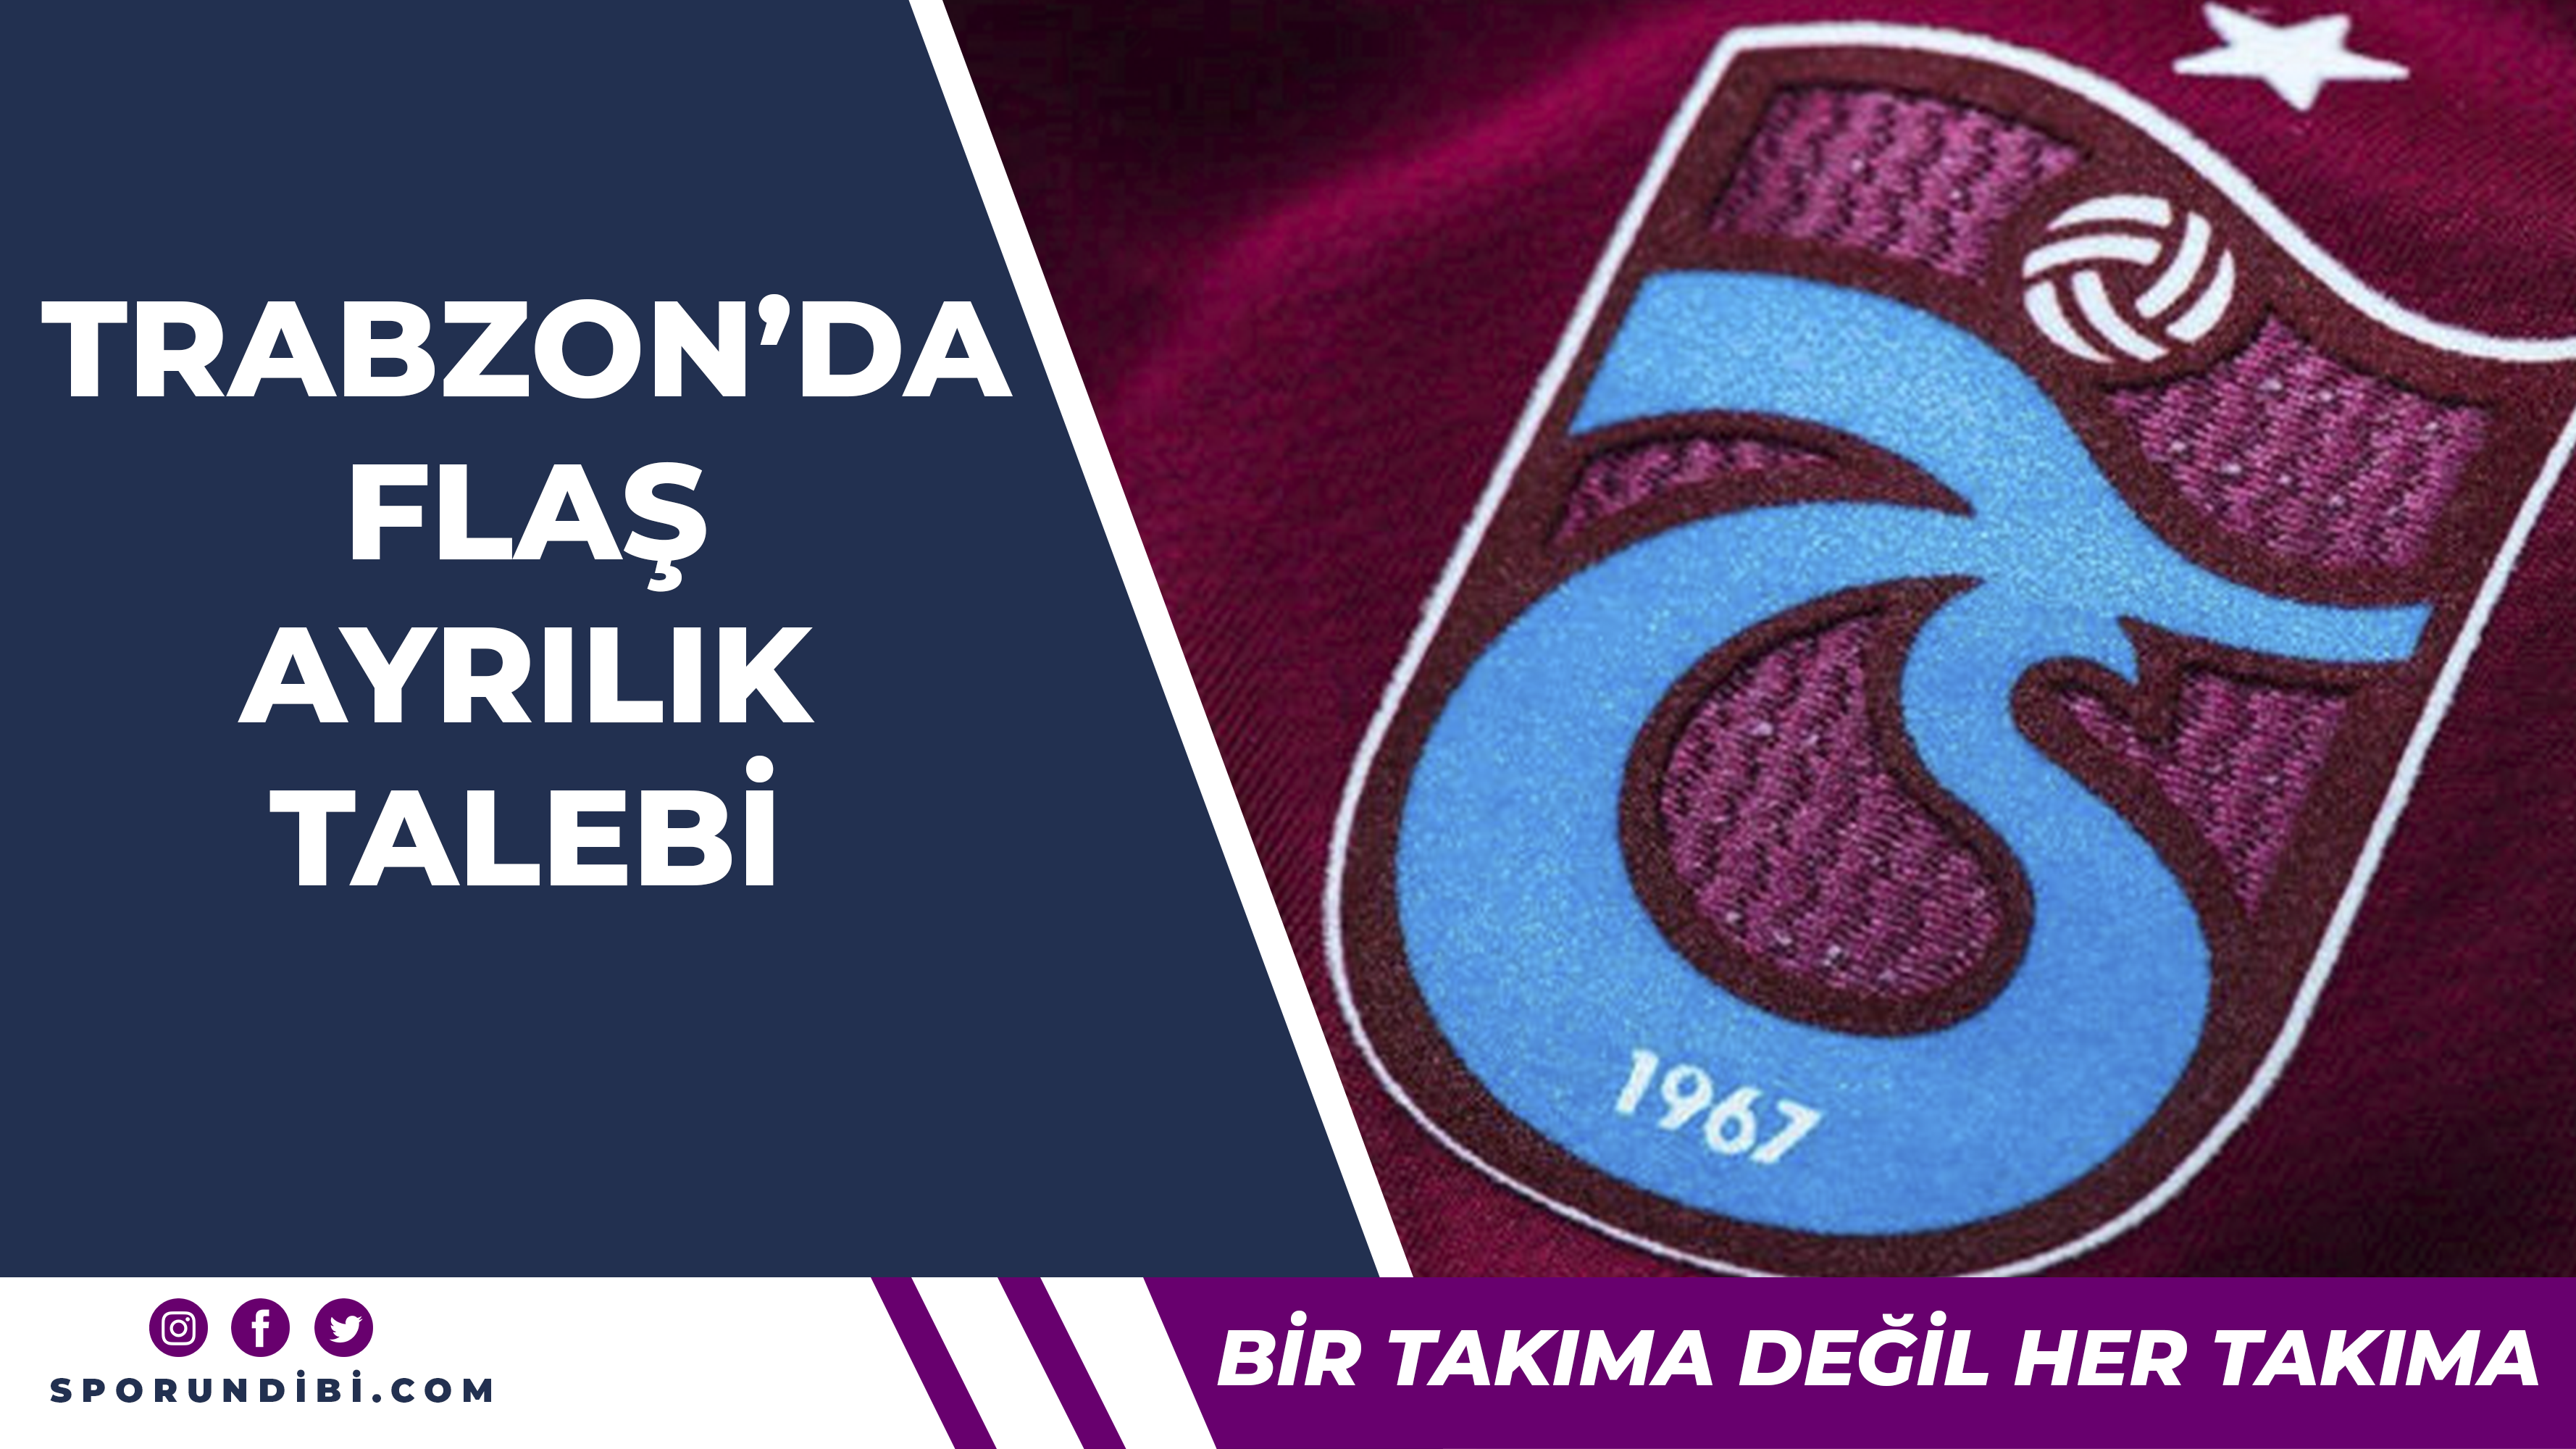 Trabzonspor'da yıldız oyuncu ayrılmak istiyor